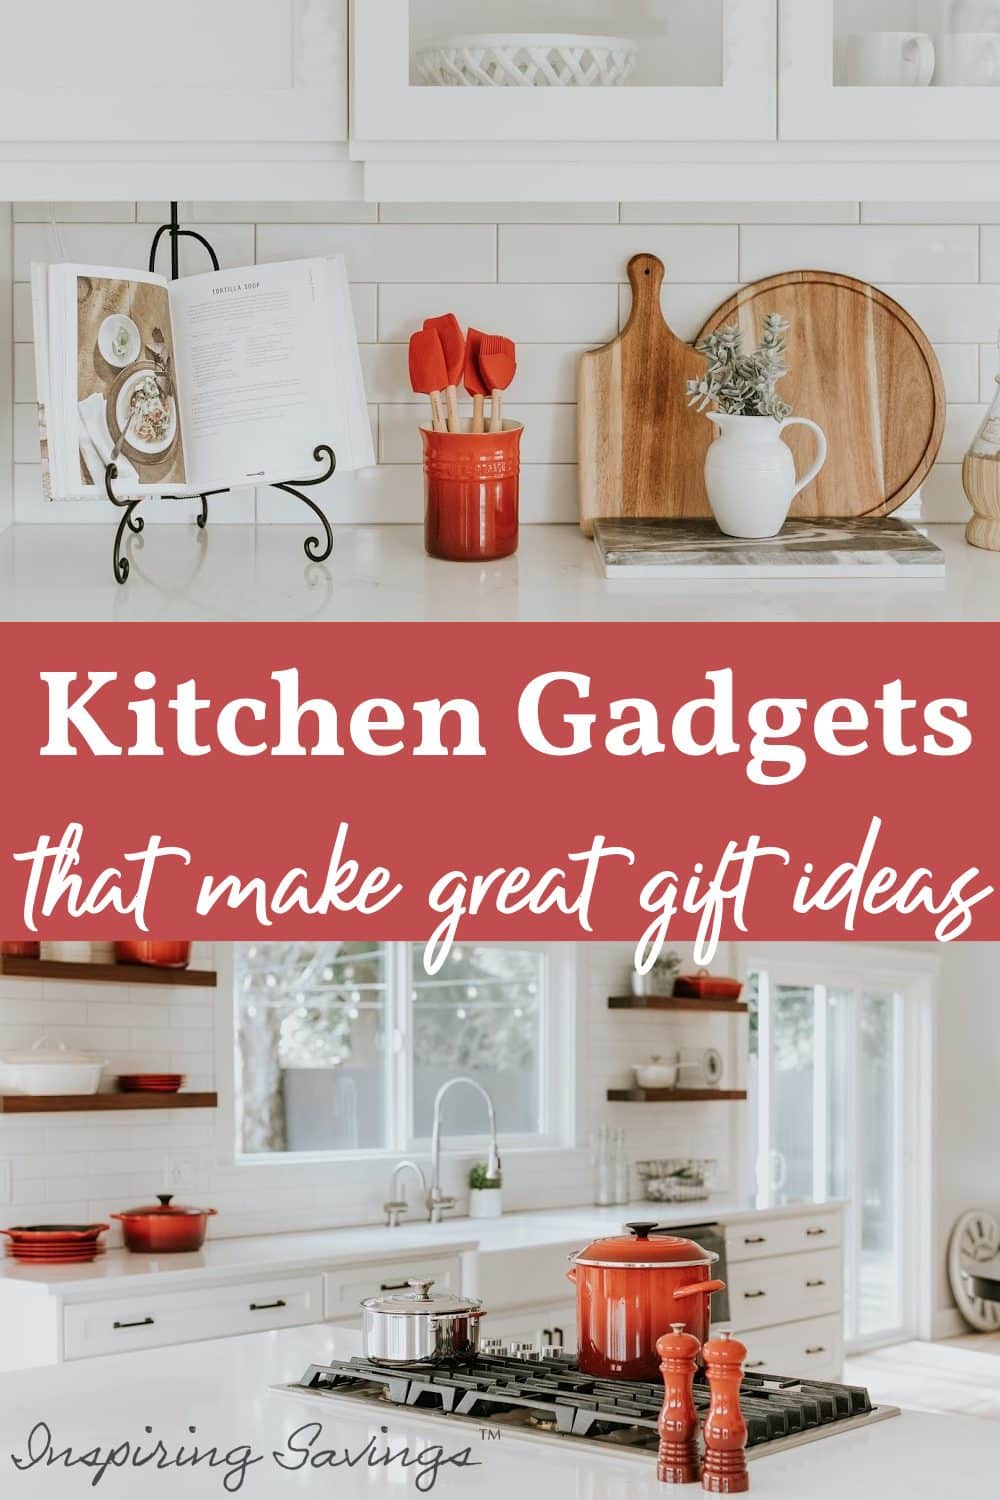 https://www.inspiringsavings.com/wp-content/uploads/2020/11/kitchen-gadgets.jpg